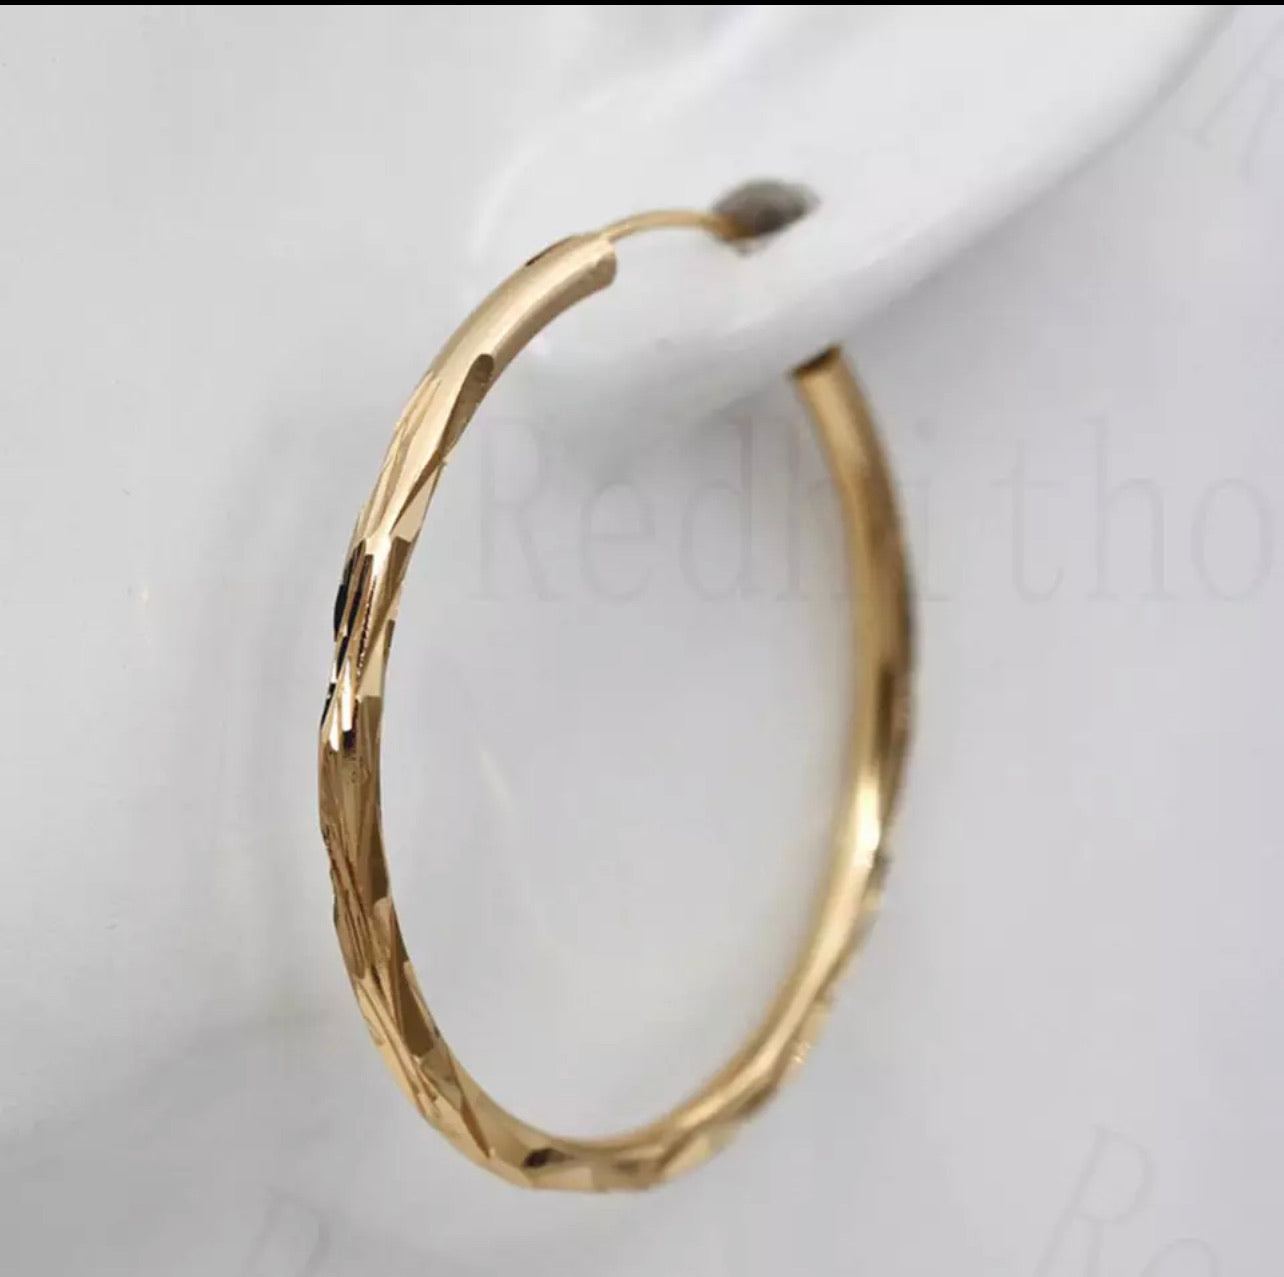 Gold filled hoop earrings